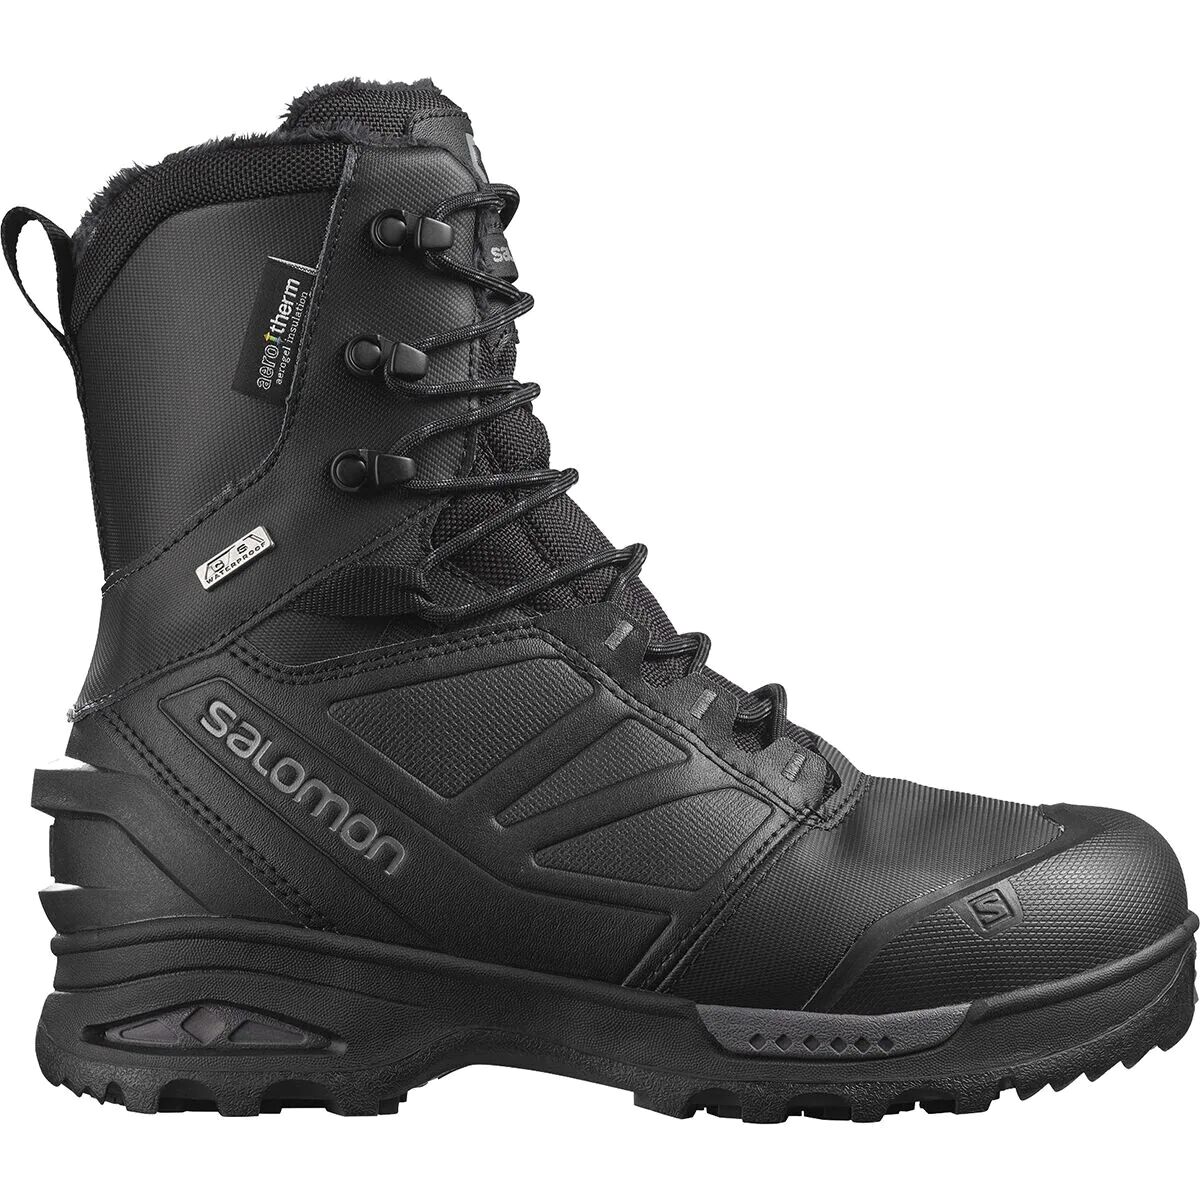 Salomon Toundra Pro CSWP Boot - Men's Black/Black/Magnet US 10.0/UK 9.5 -  L40472700-US 10.0/UK 9.5